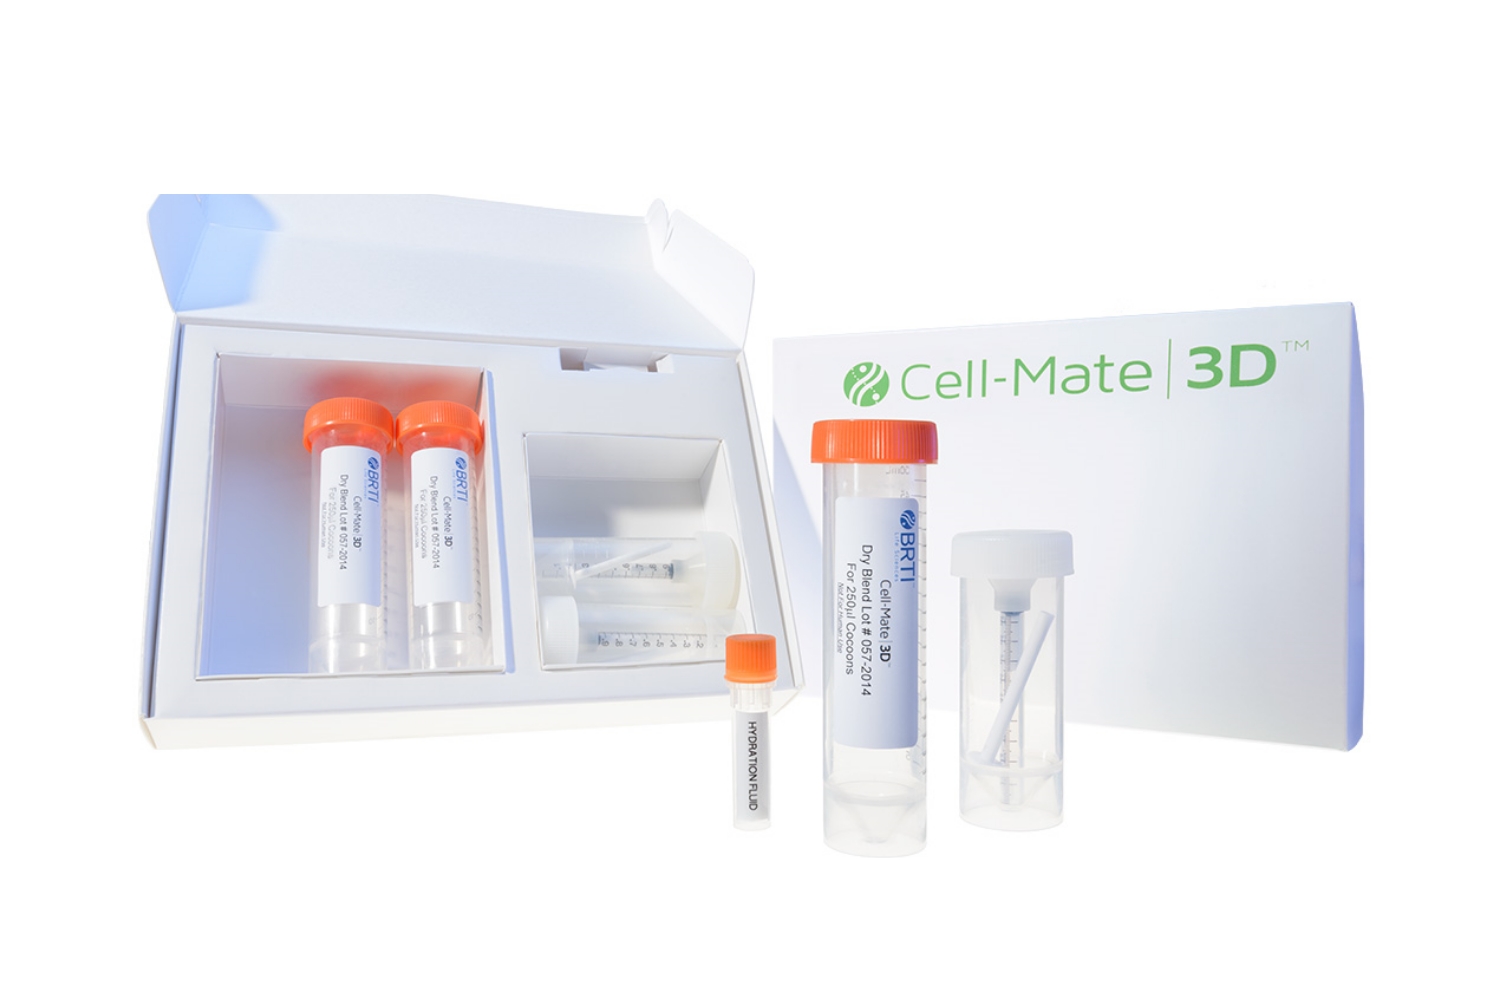 Cell-Mate3D kit